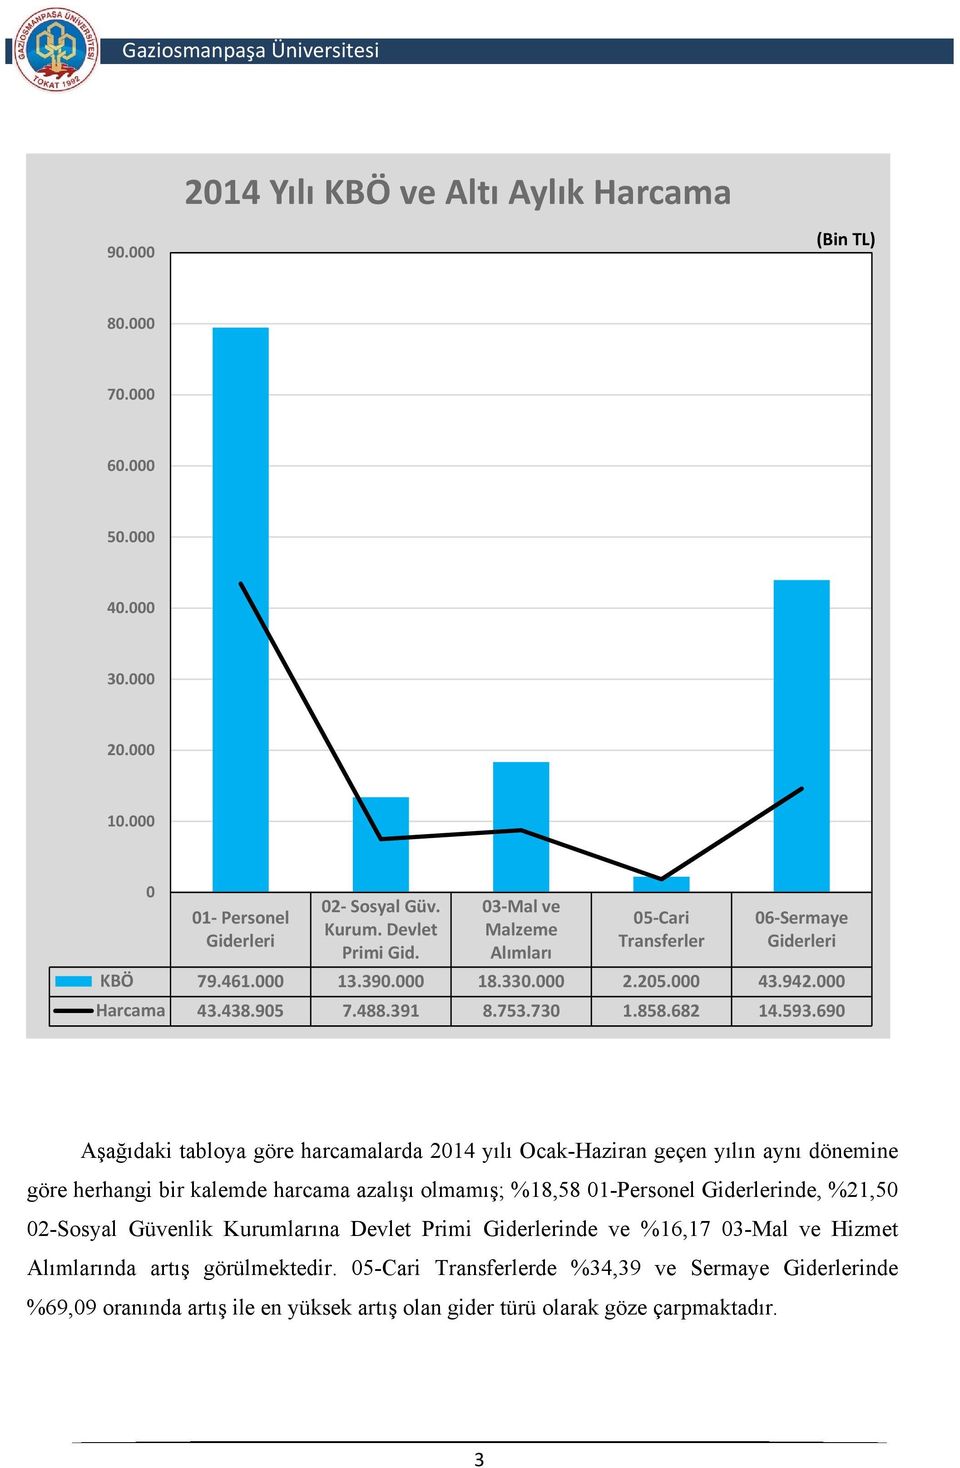 690 Aşağıdaki tabloya göre harcamalarda 2014 yılı Ocak-Haziran geçen yılın aynı dönemine göre herhangi bir kalemde harcama azalışı olmamış; %18,58 01-Personel Giderlerinde, %21,50 02-Sosyal